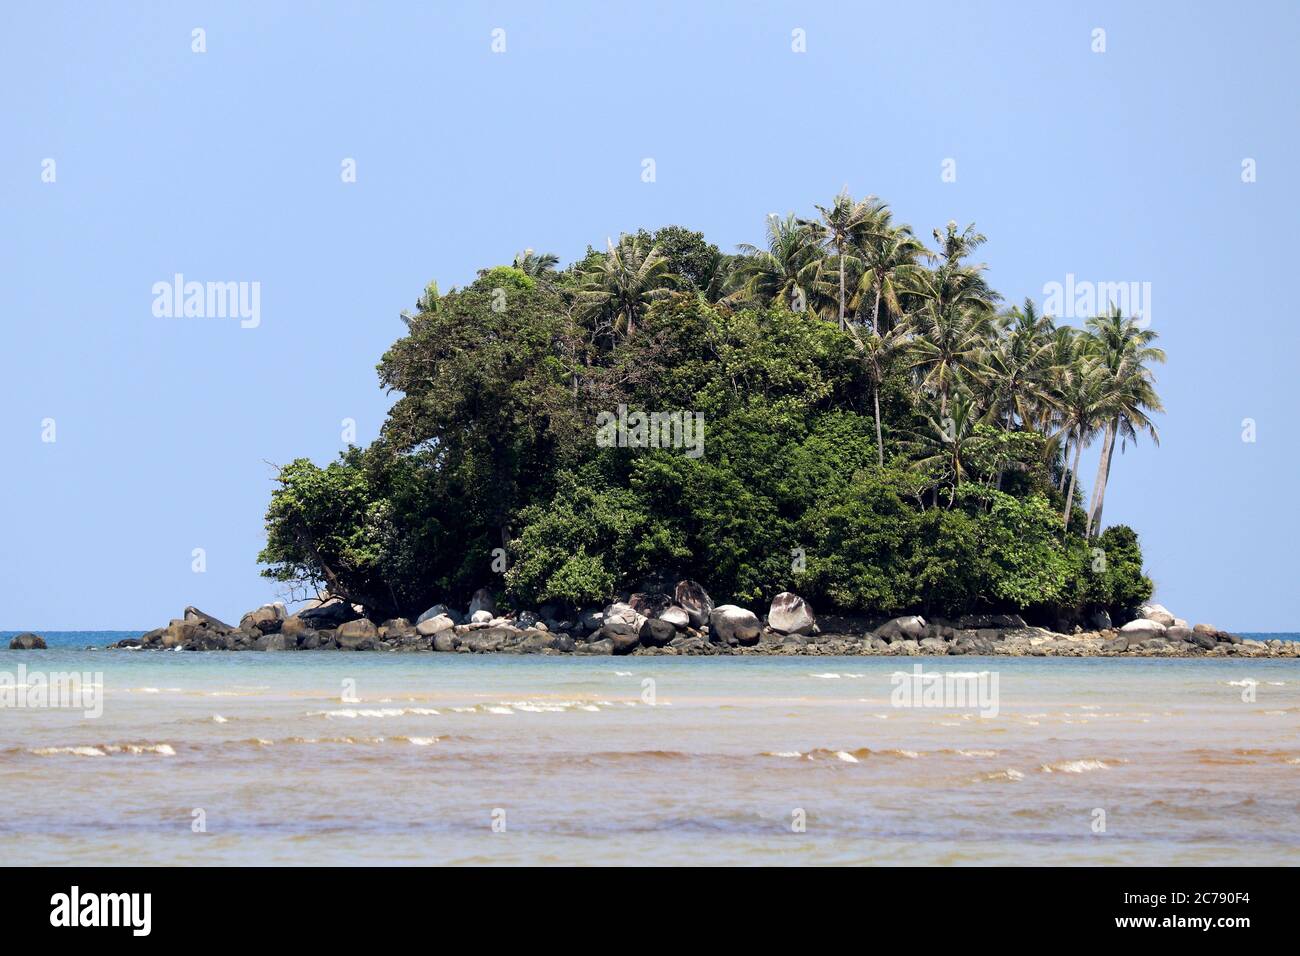 Île tropicale avec palmiers à noix de coco dans un océan, vue pittoresque depuis l'eau peu profonde, foyer sélectif. Décor marin coloré avec ciel bleu, concept Banque D'Images